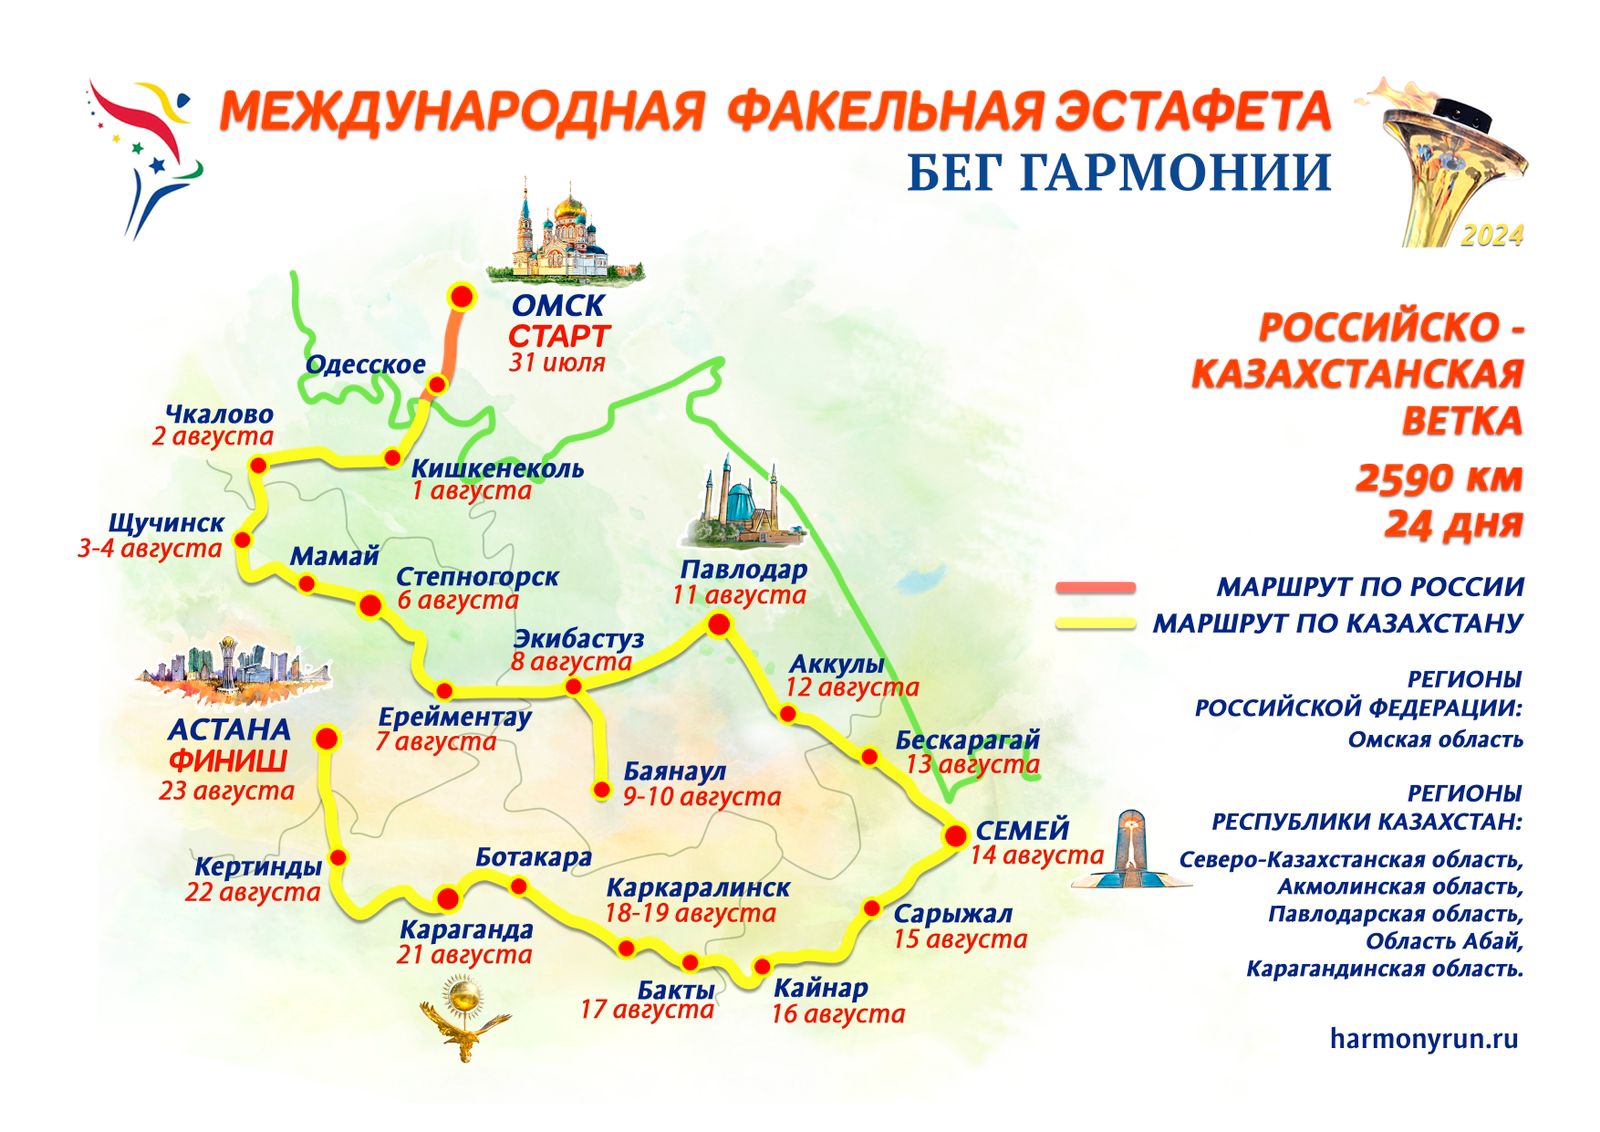 Карта маршрута Российско-Казахстанской ветки Бега Гармонии